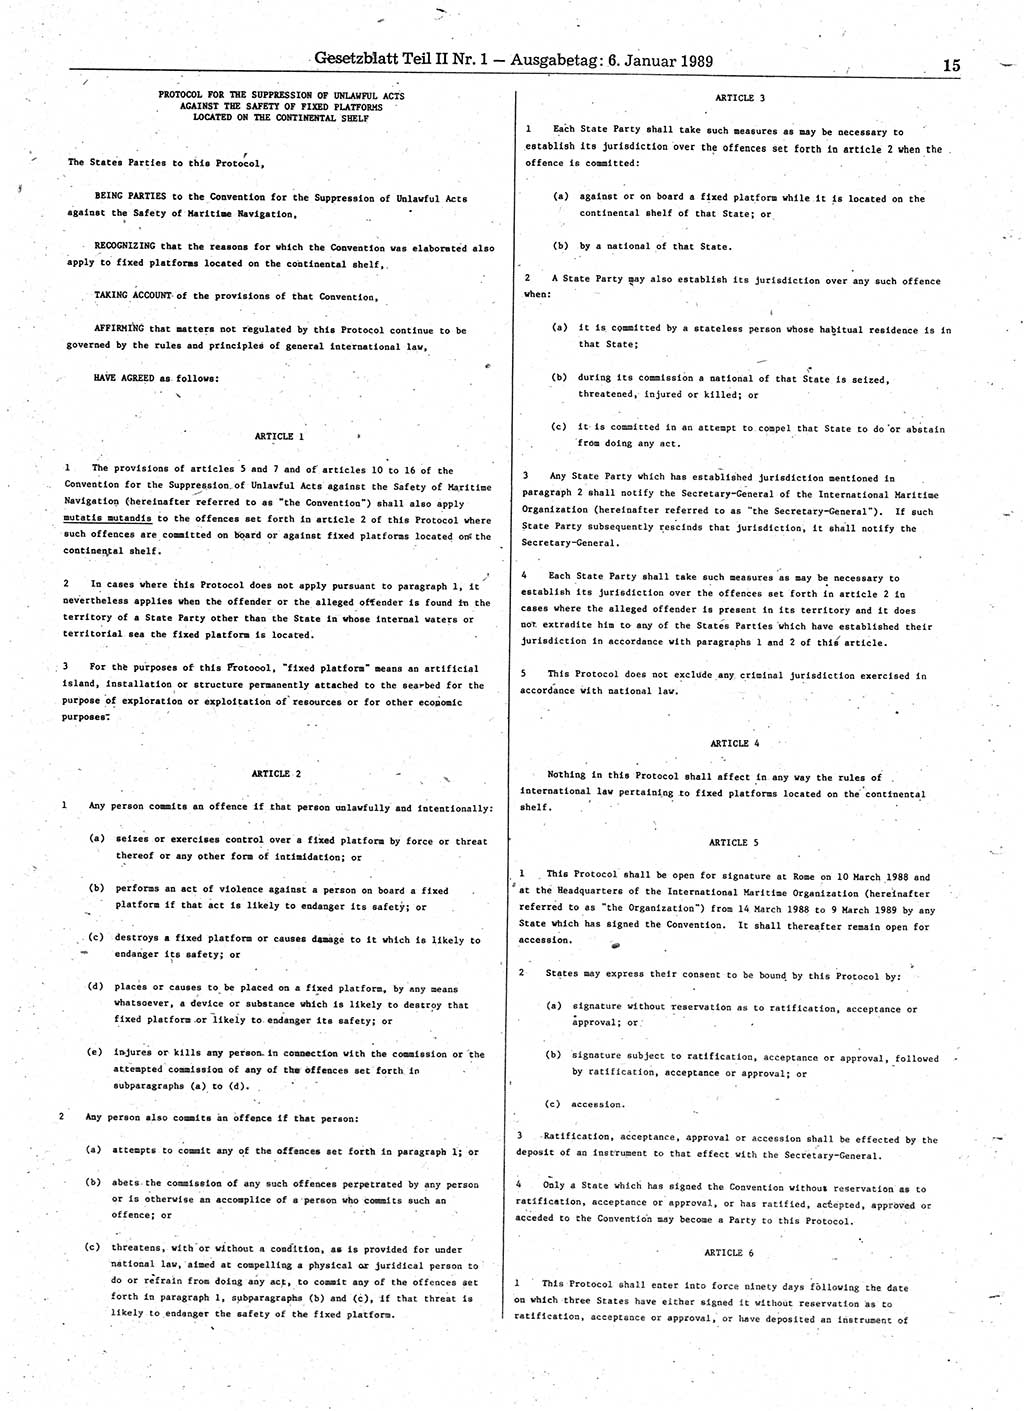 Gesetzblatt (GBl.) der Deutschen Demokratischen Republik (DDR) Teil ⅠⅠ 1989, Seite 15 (GBl. DDR ⅠⅠ 1989, S. 15)